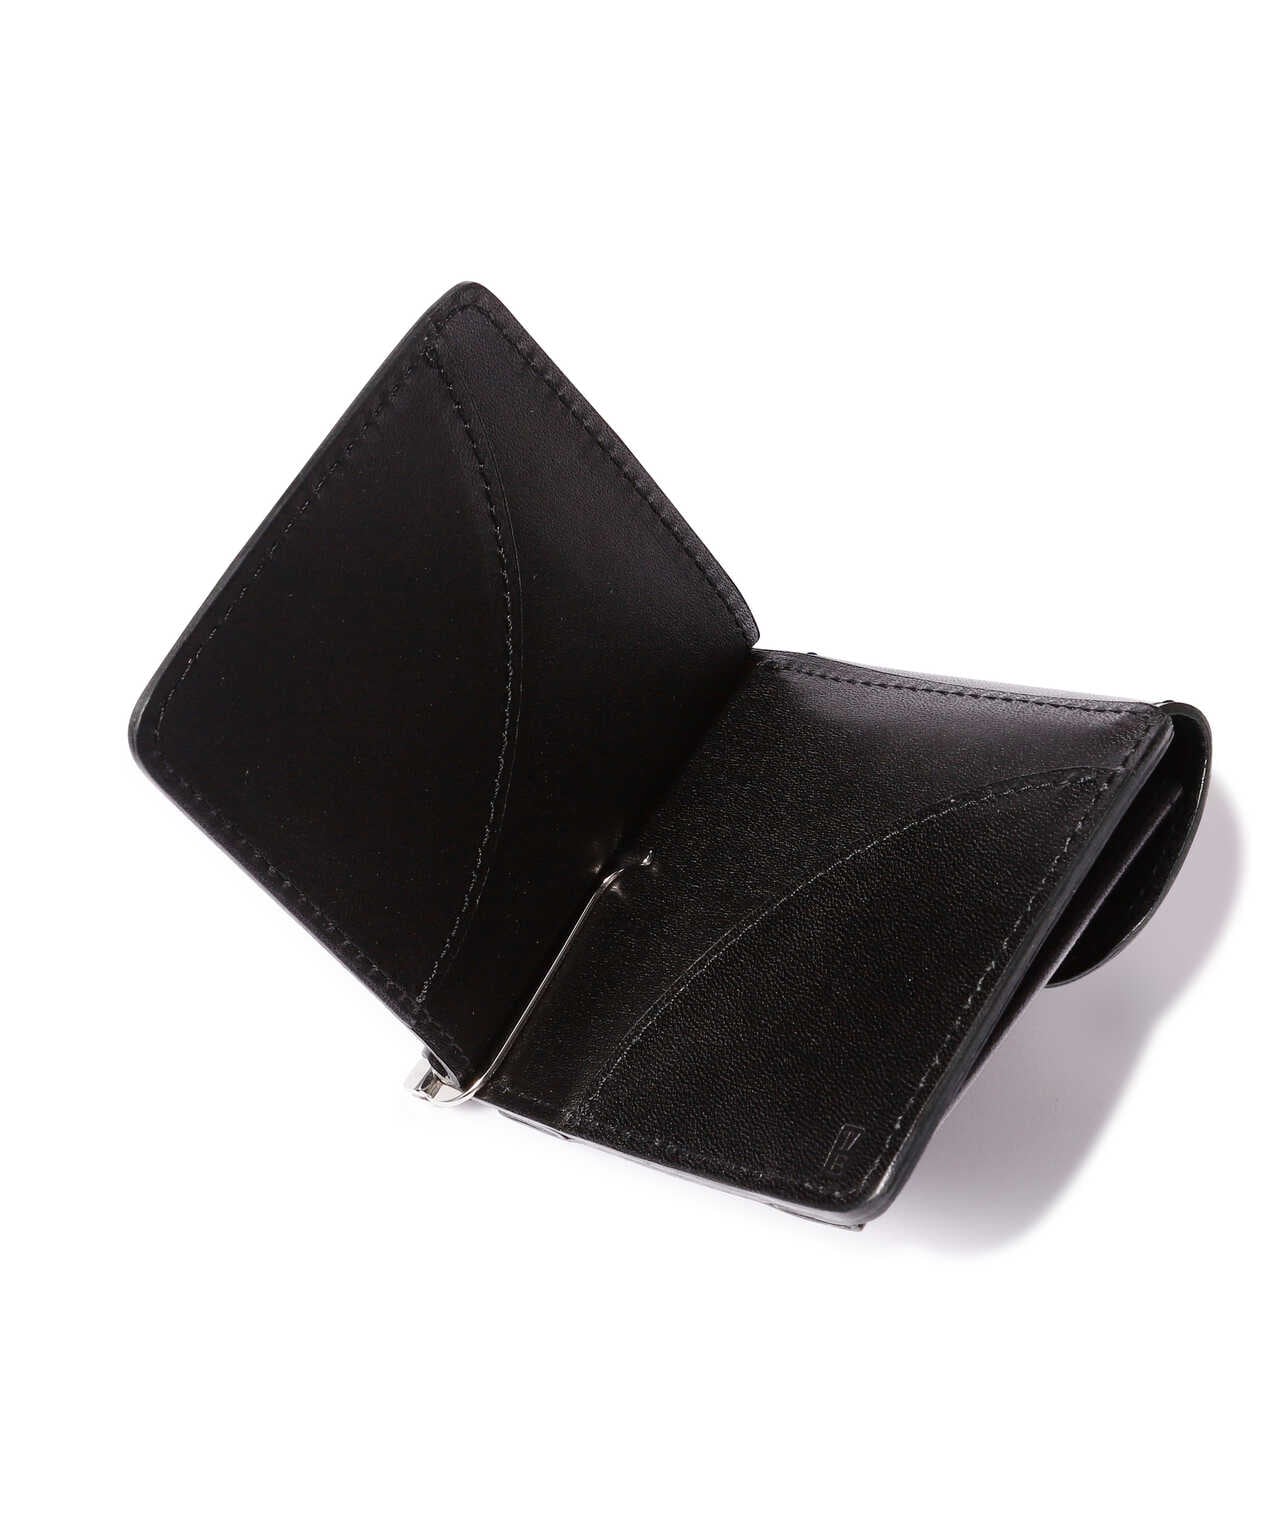 メンズ 財布 Swivel hook compact wallet ナスカン フック